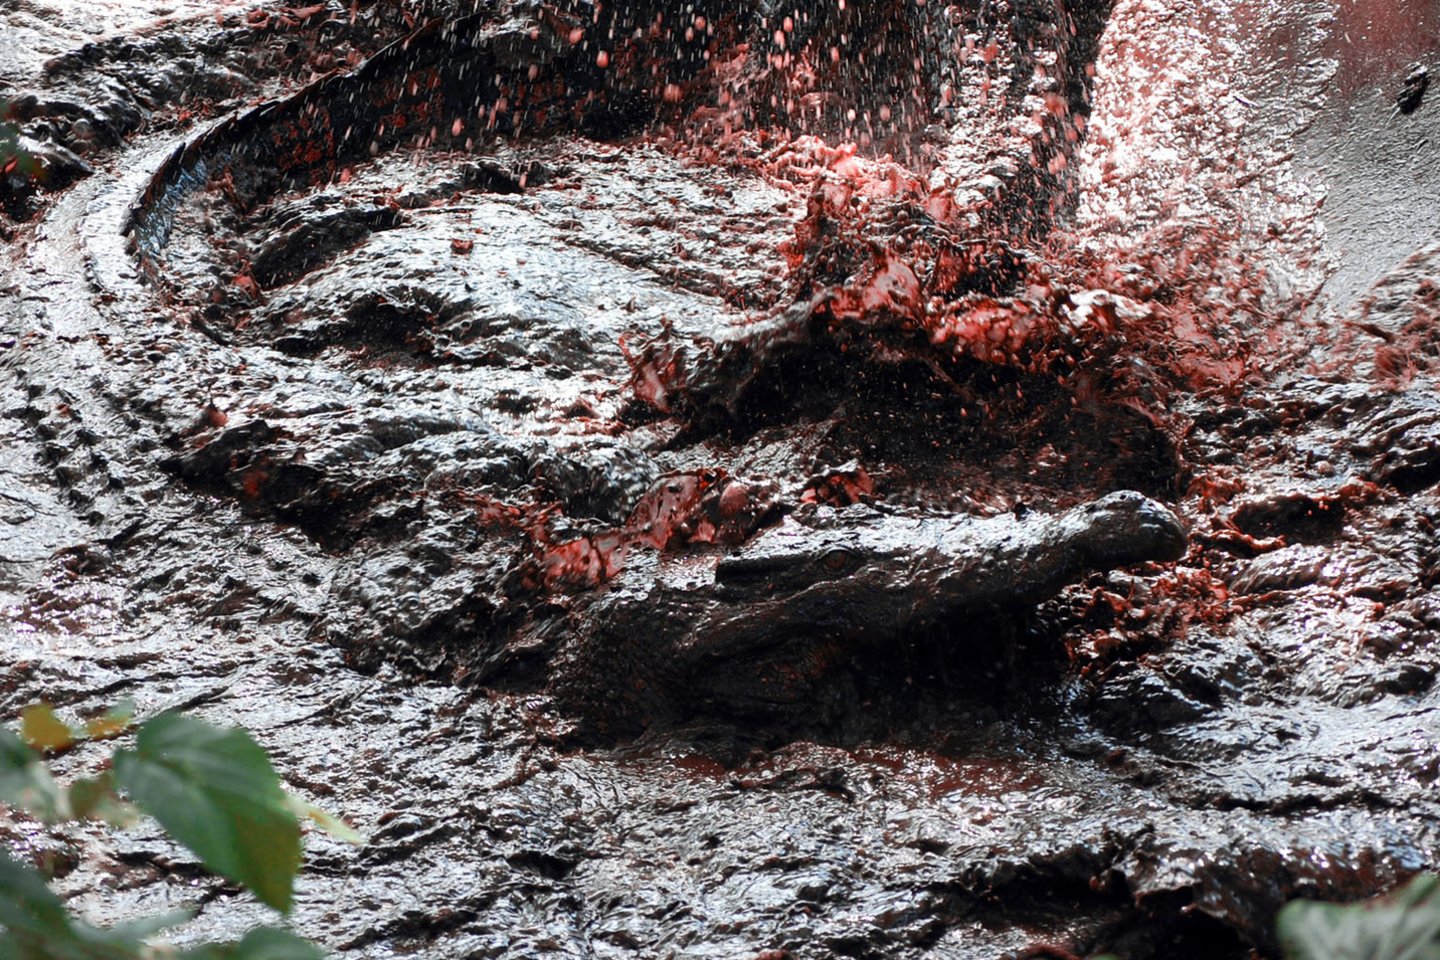  Indonezijoje žmonės papjovė 300 krokodilų.<br> Wikipedia nuotr.